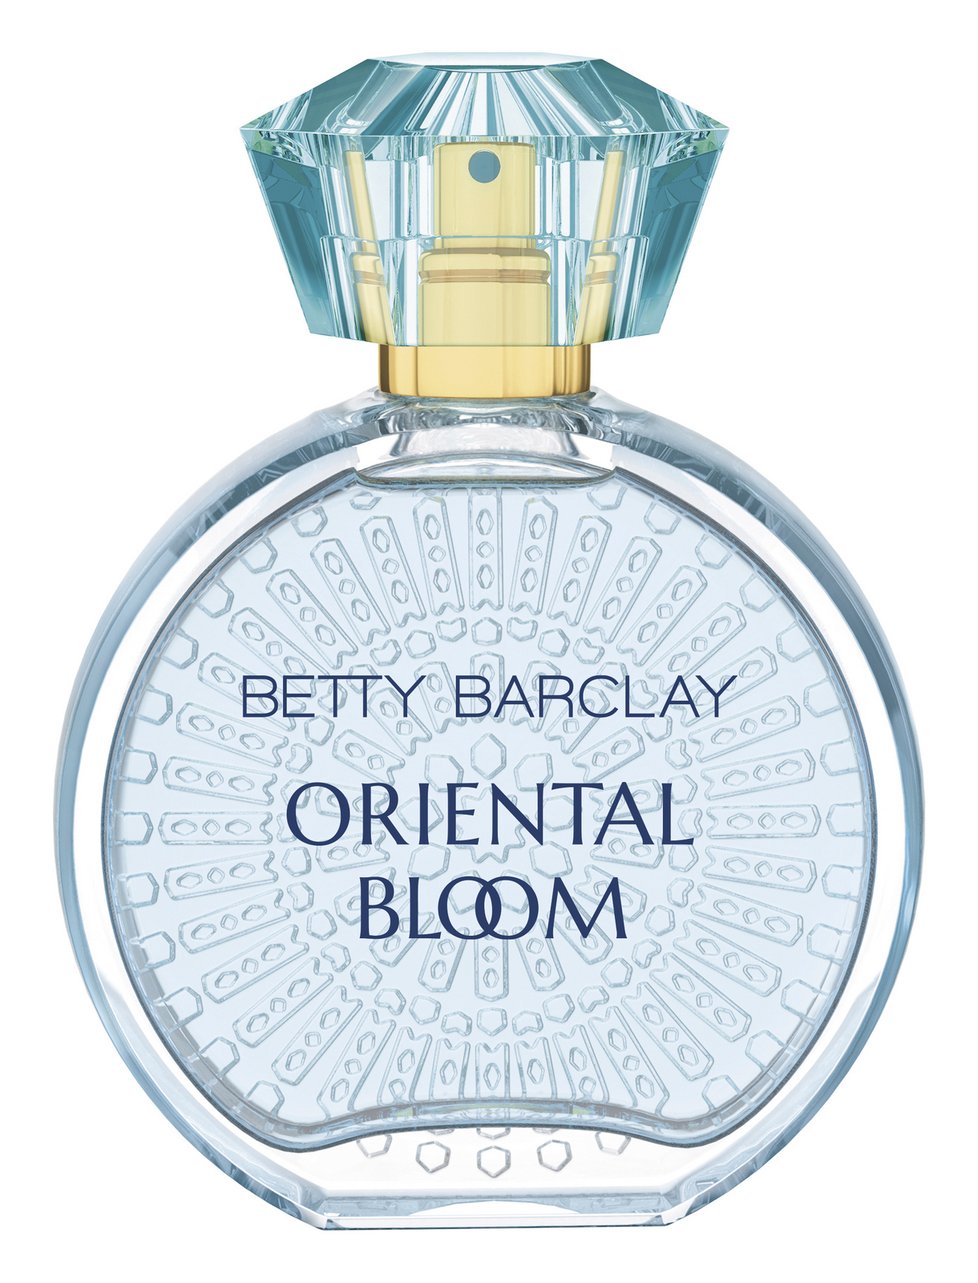 Betty Barclay Oriental Bloom, Eau de Toilette, 30ml, 439 Kč